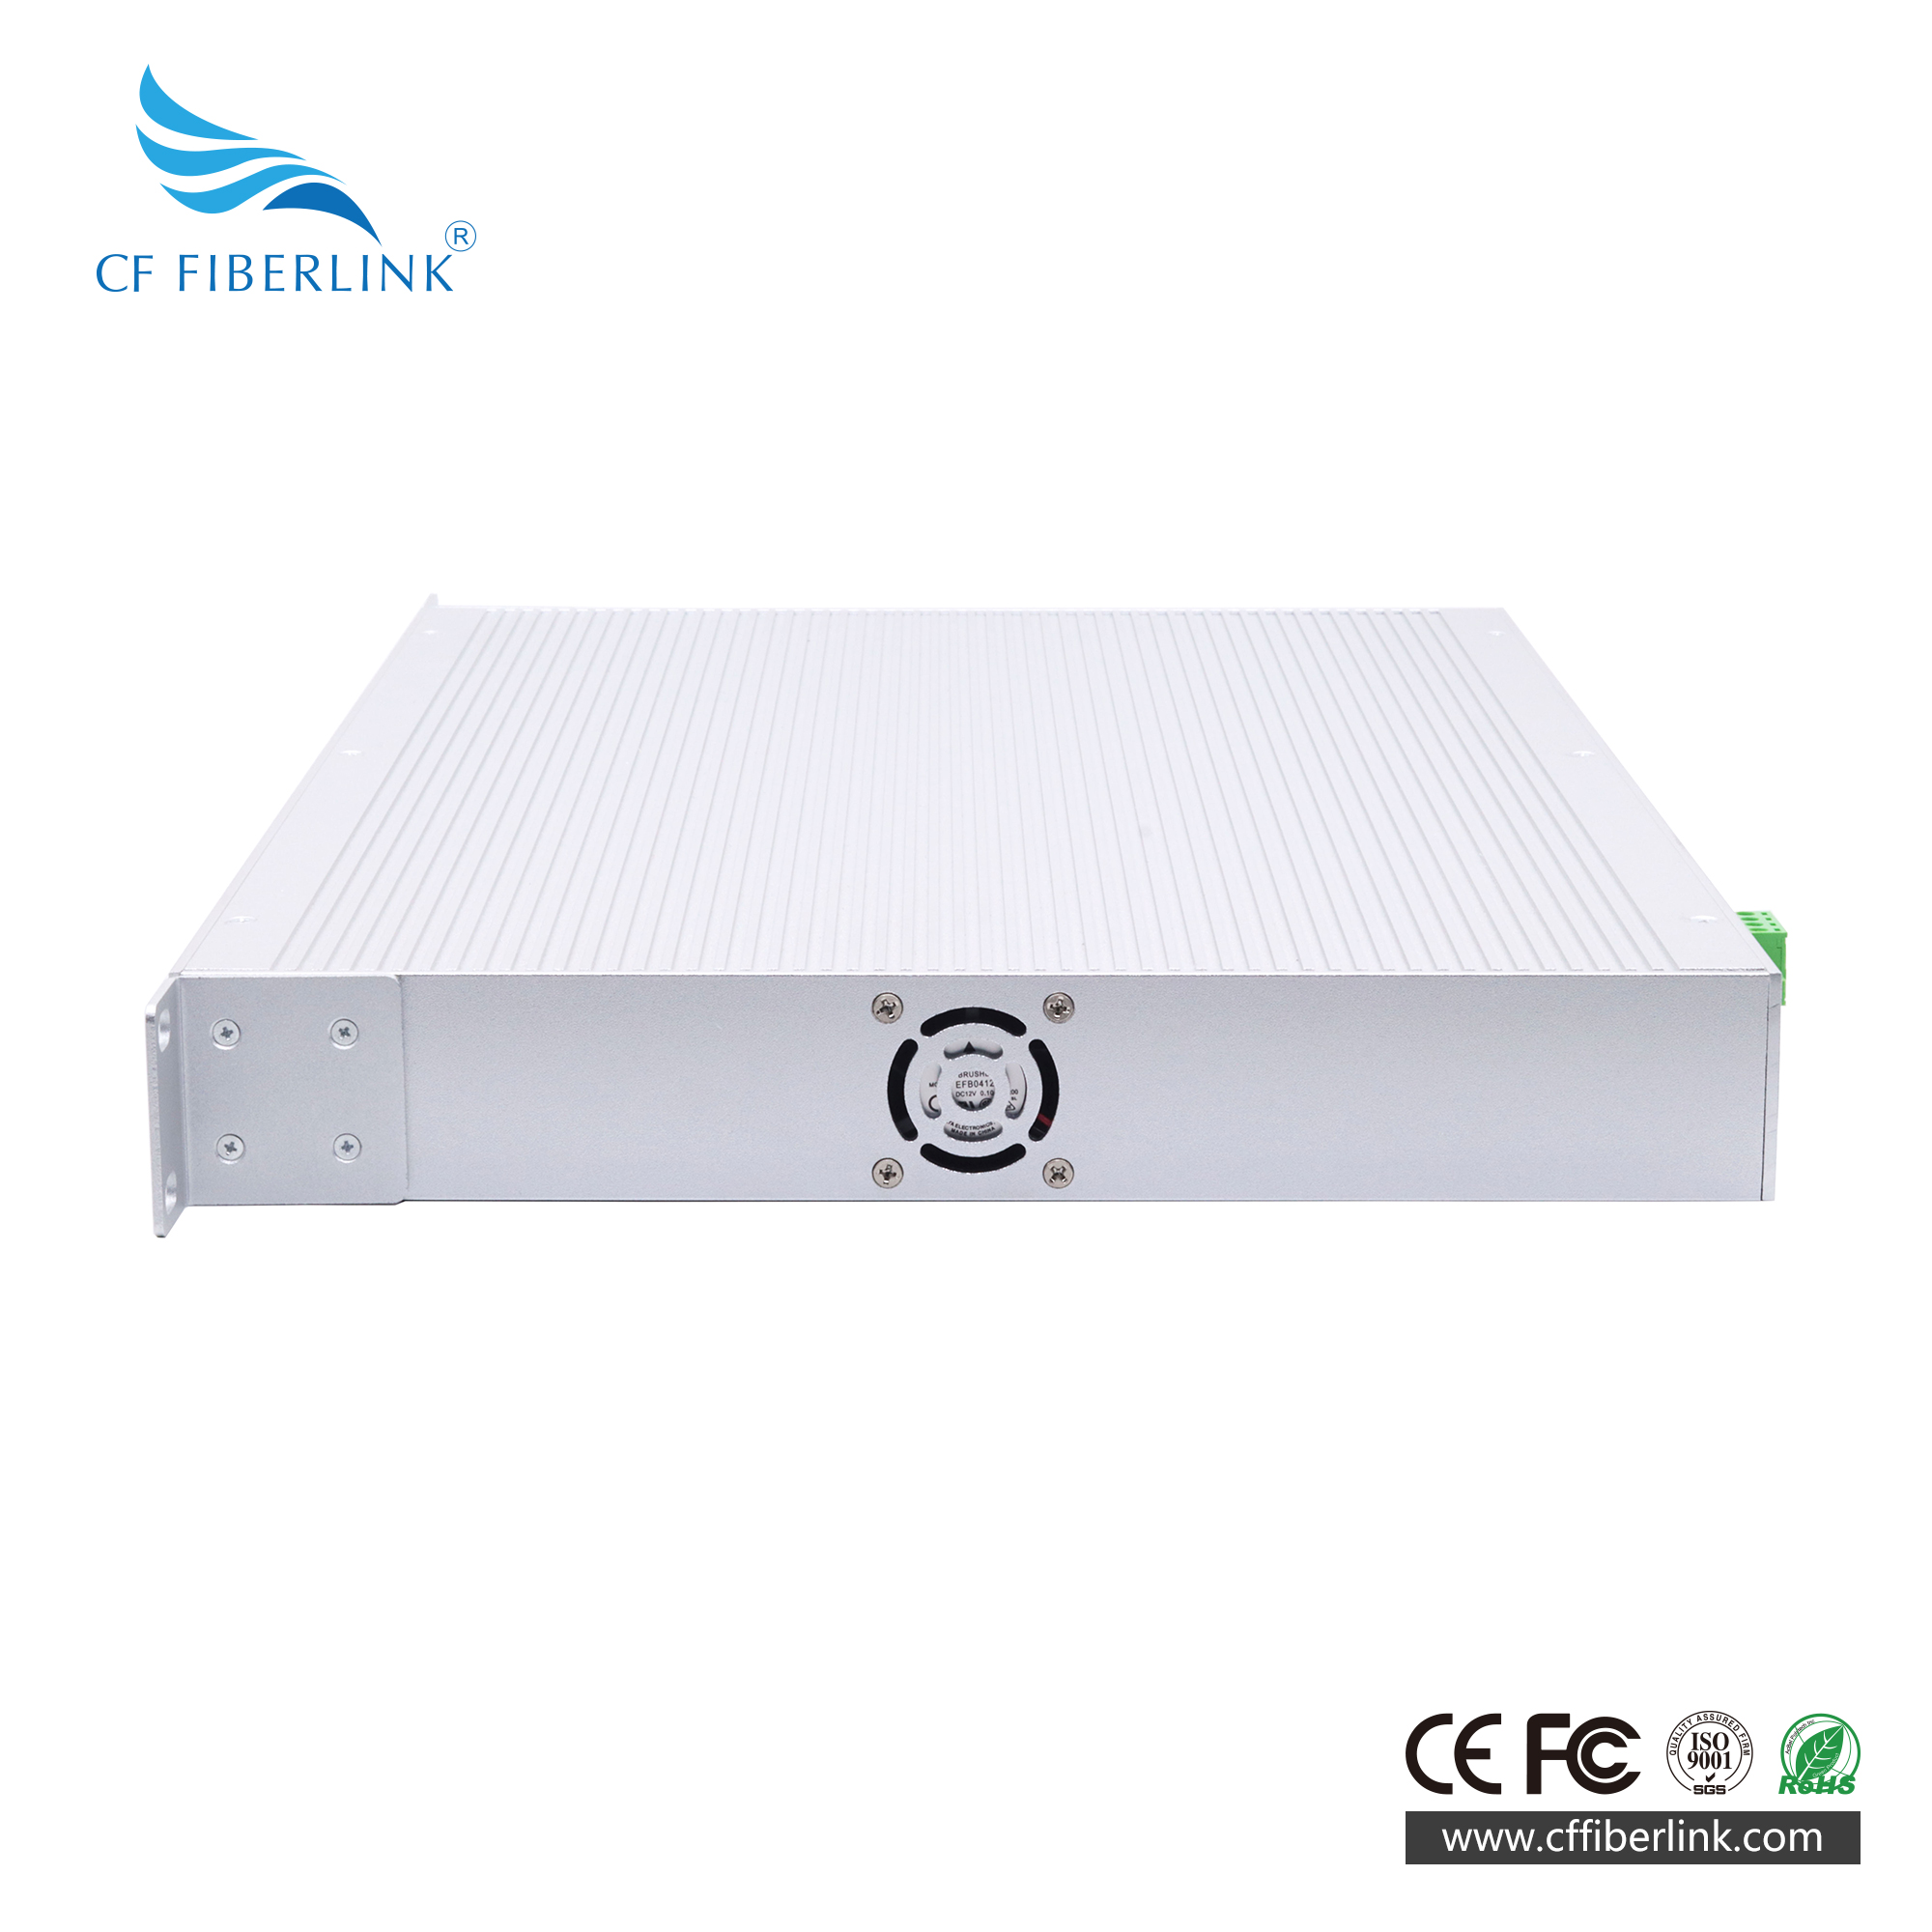 28-port 10G Uplink L3 Managed Industrial Ethernet Switch